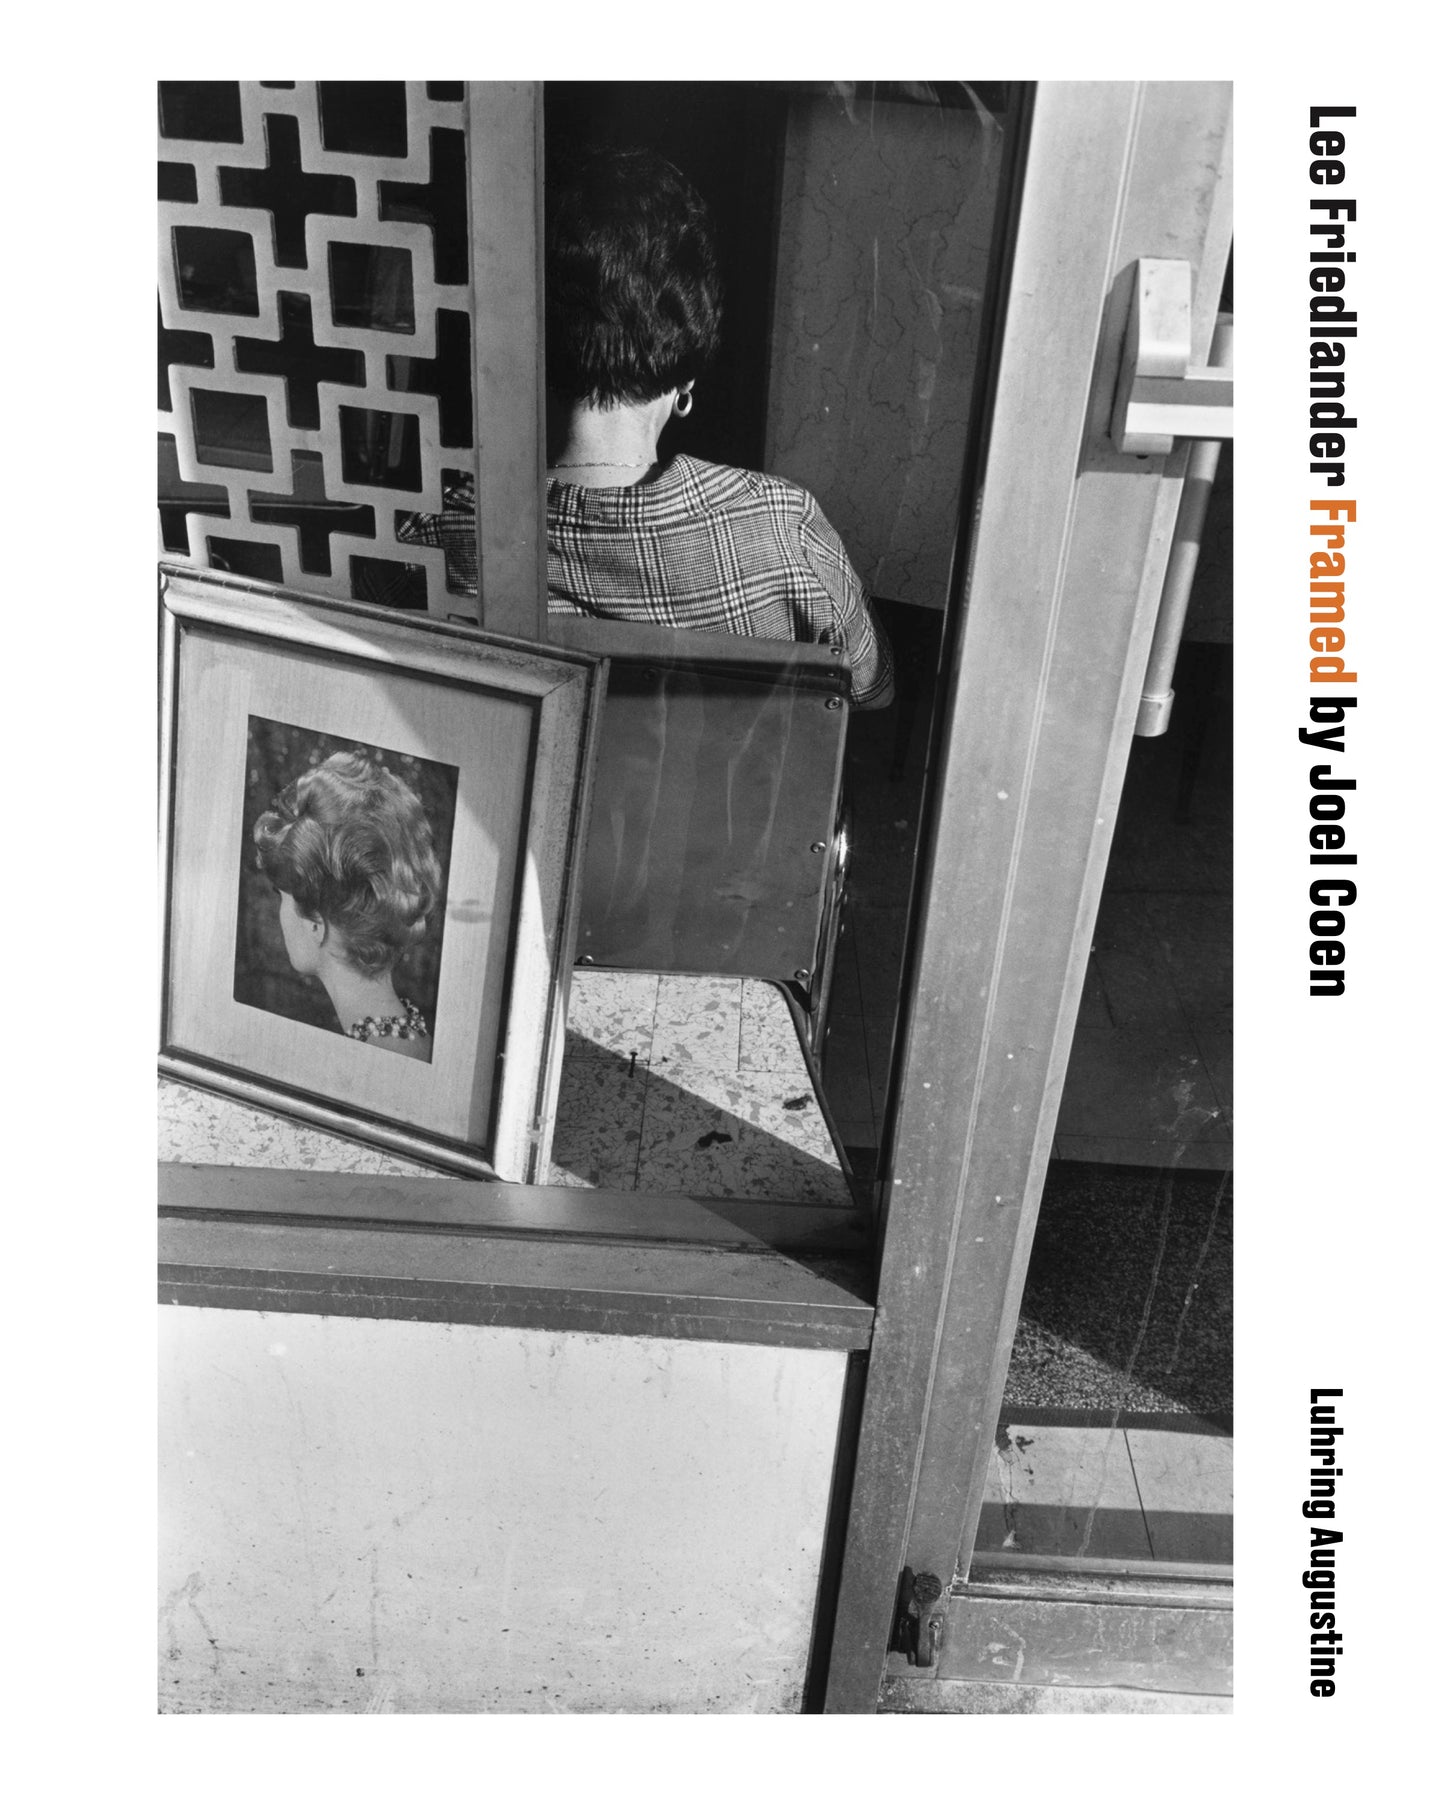 Lee Friedlander Framed by Joel Coen Exhibition Poster